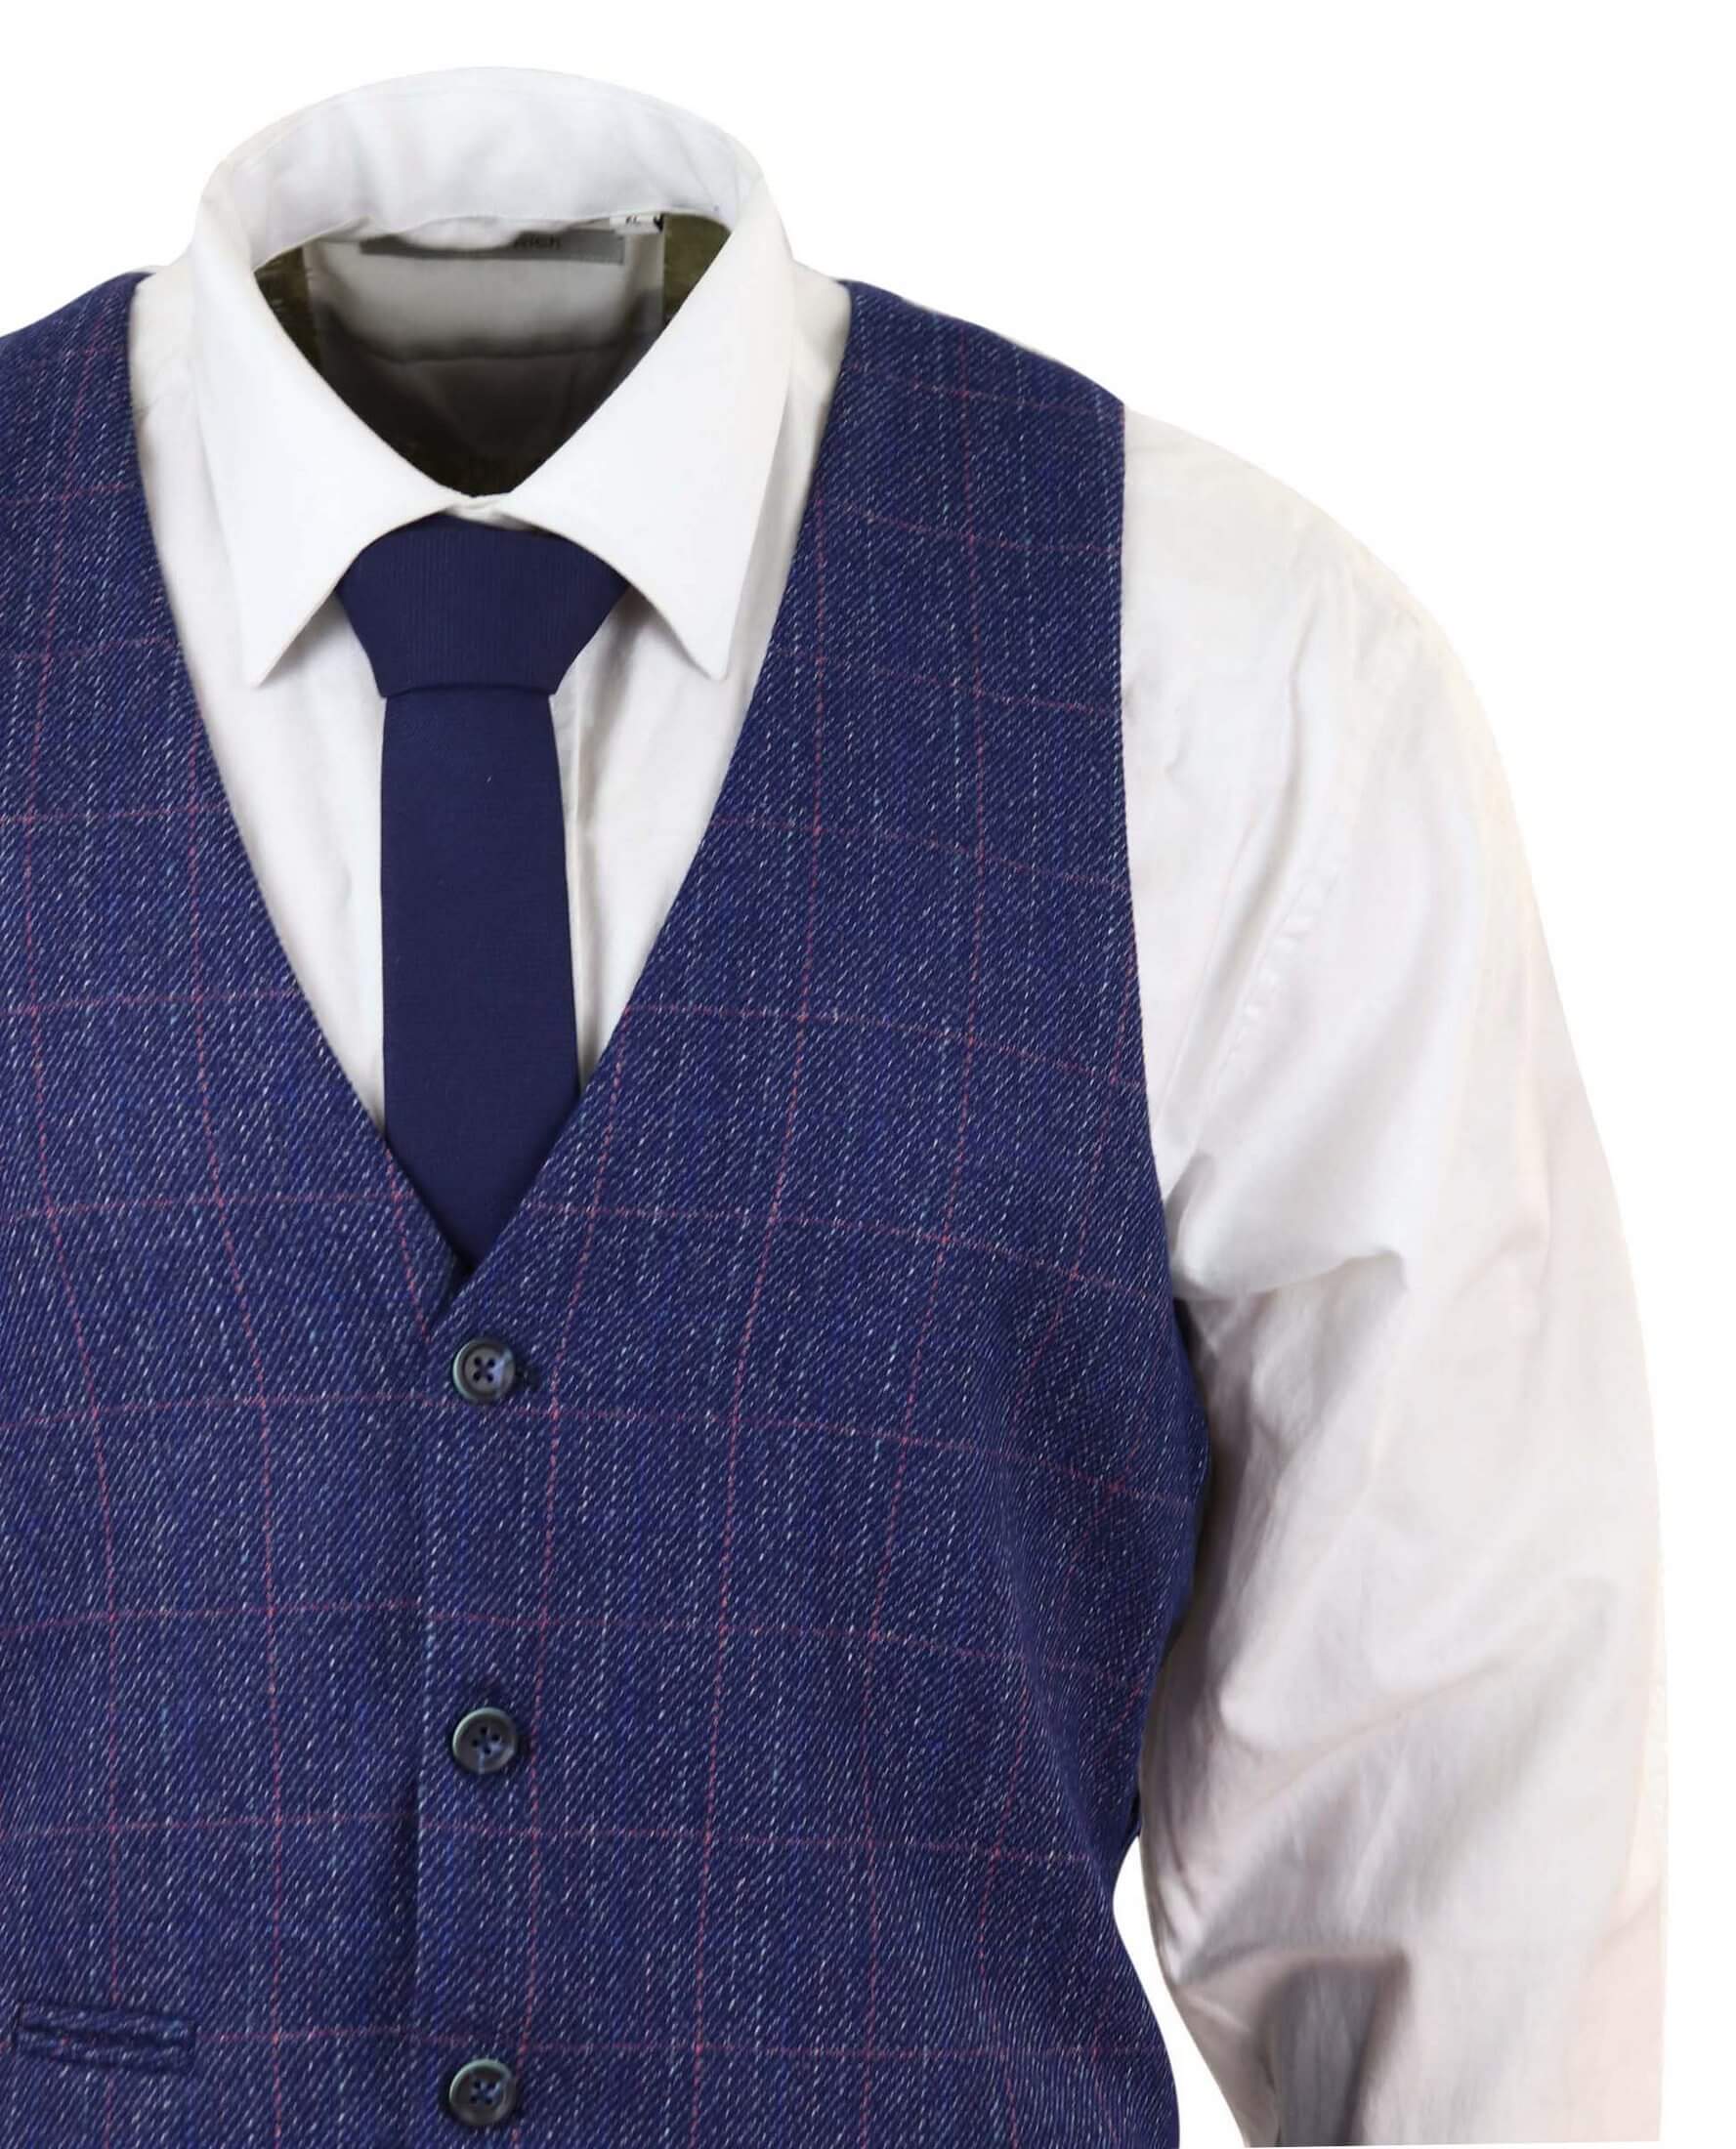 Blue 3 Piece Tweed Suit - Marc Darcy Harry: Buy Online - Happy Gentleman